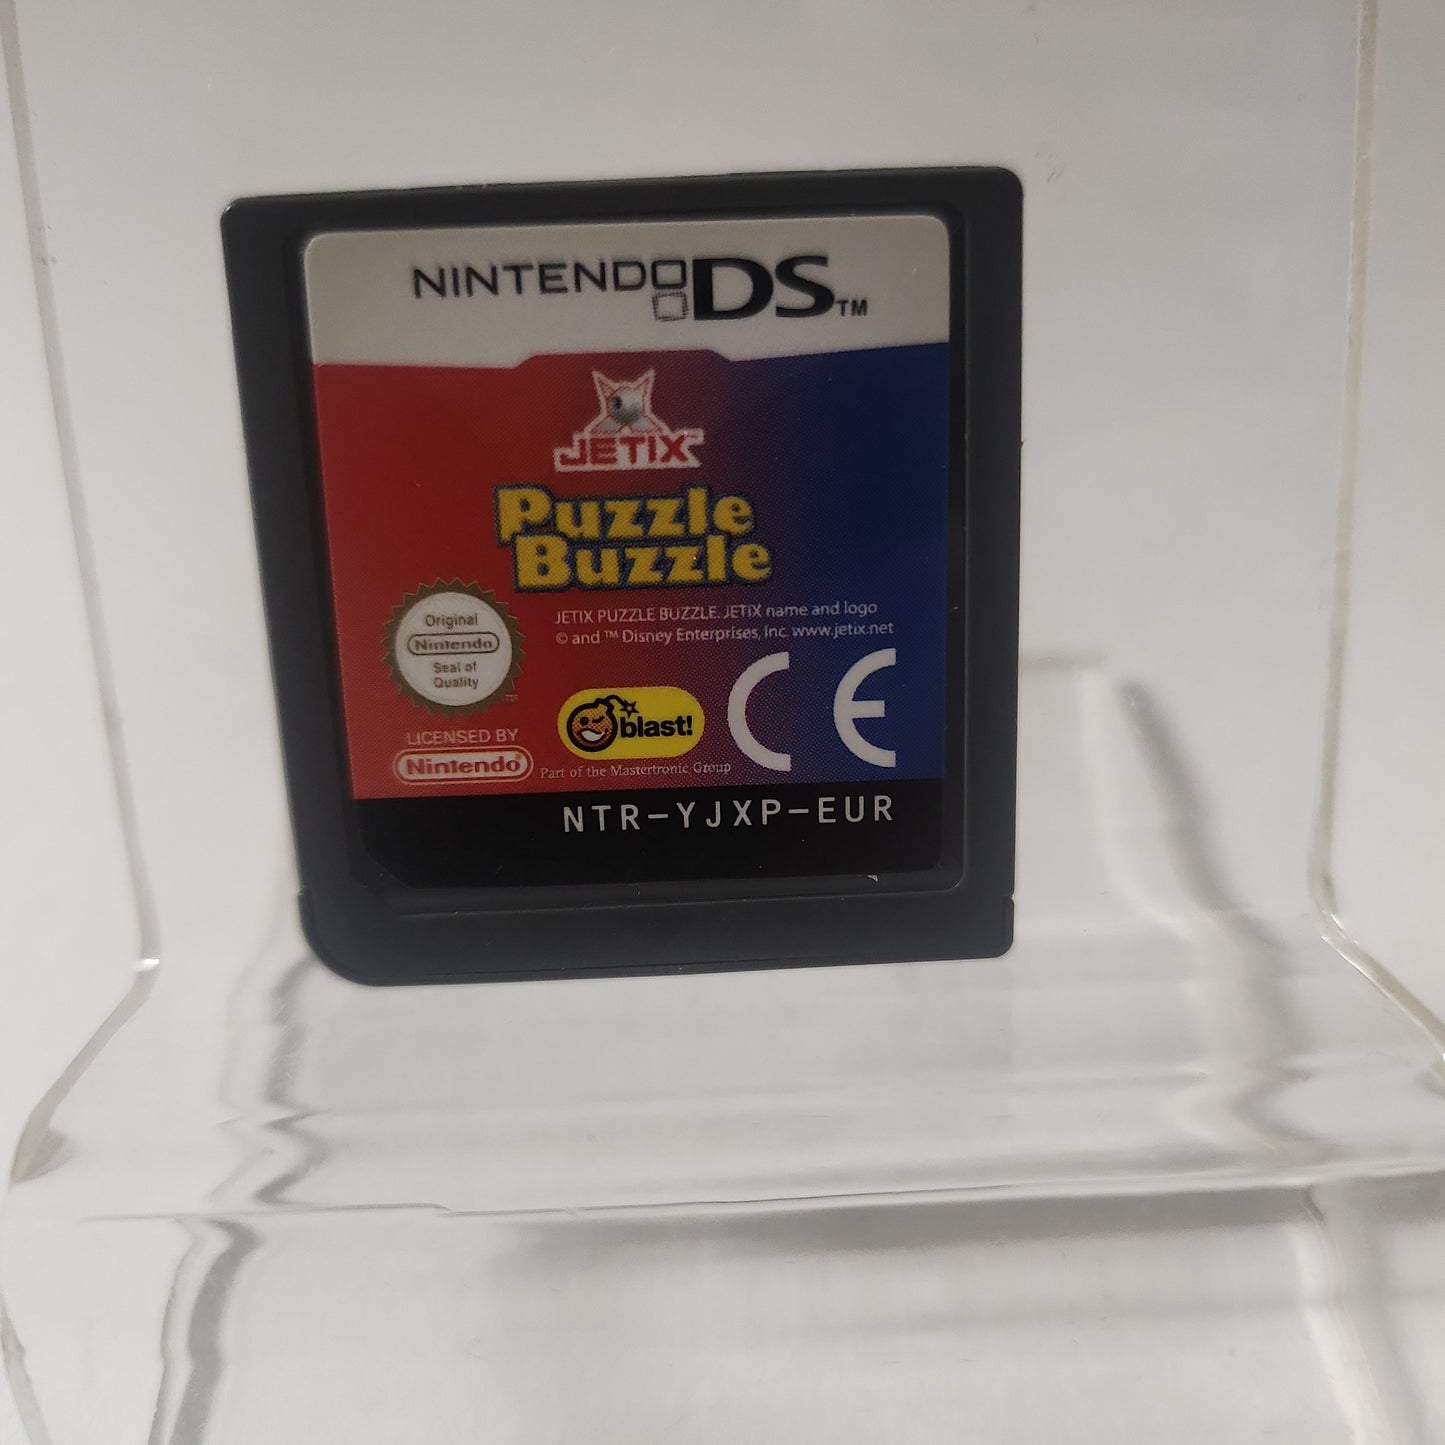 Jetrix Puzzle Buzzle (nur Spiel) Nintendo DS